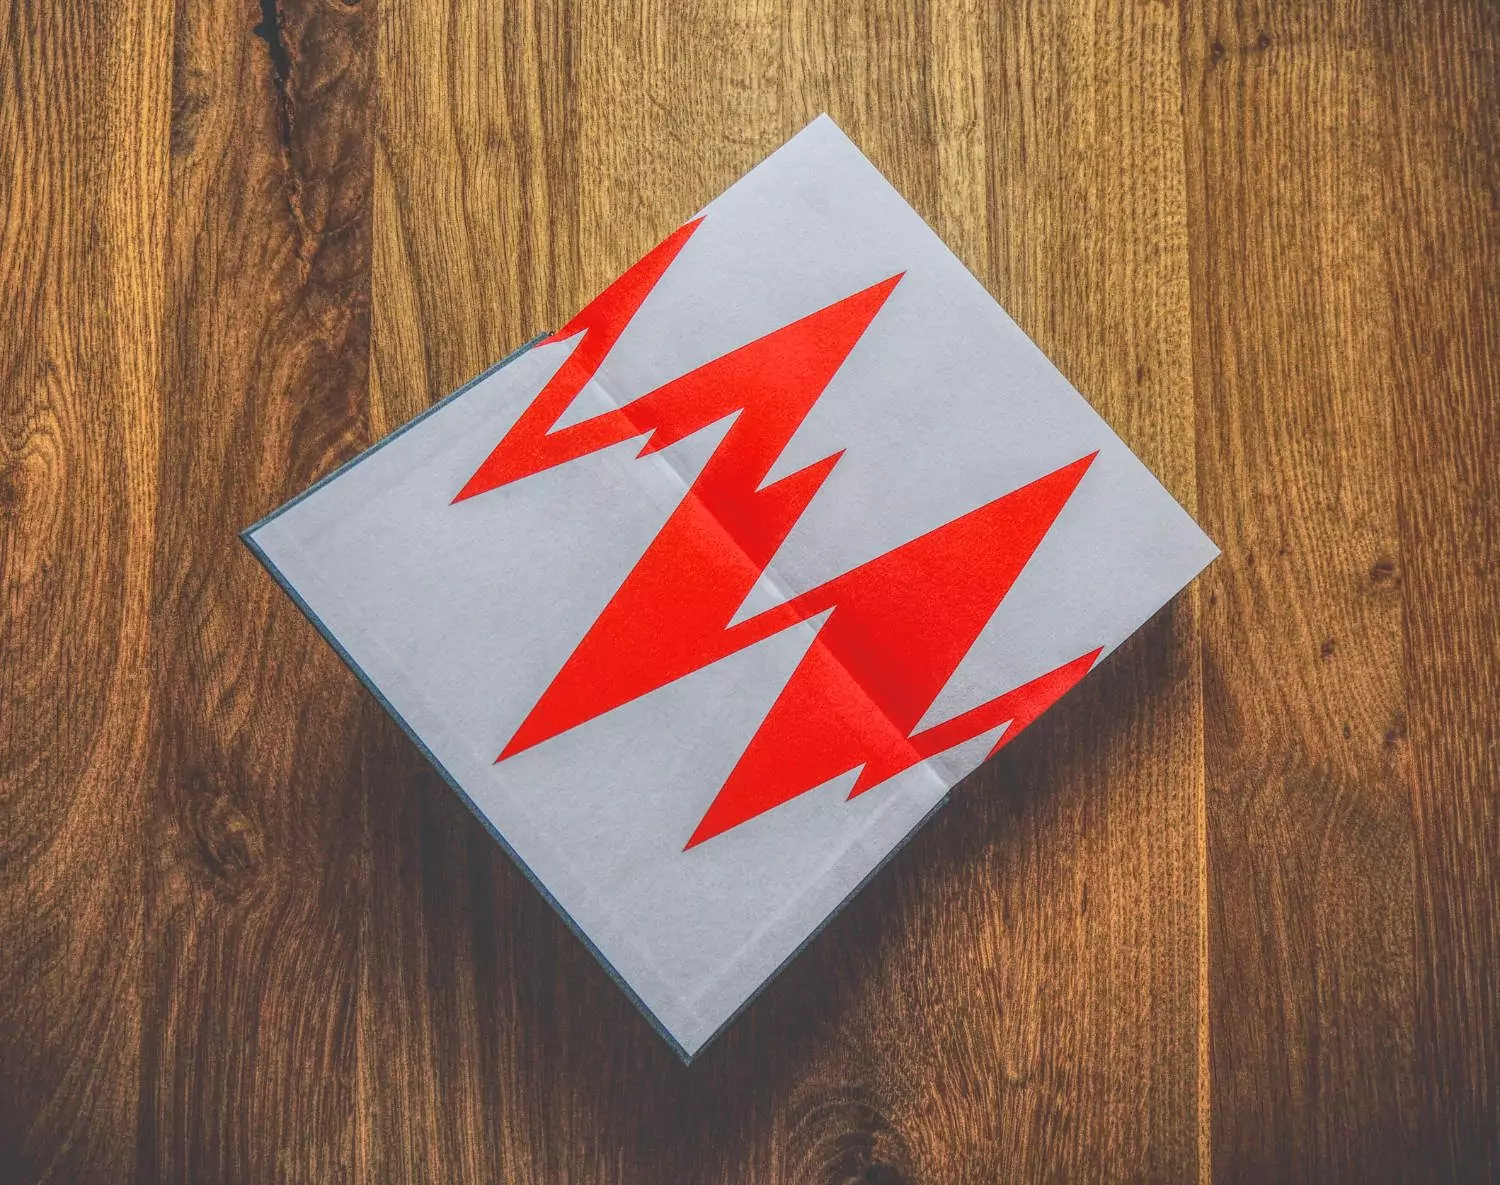 Eine rote Kiste mit einem Blitz darauf.